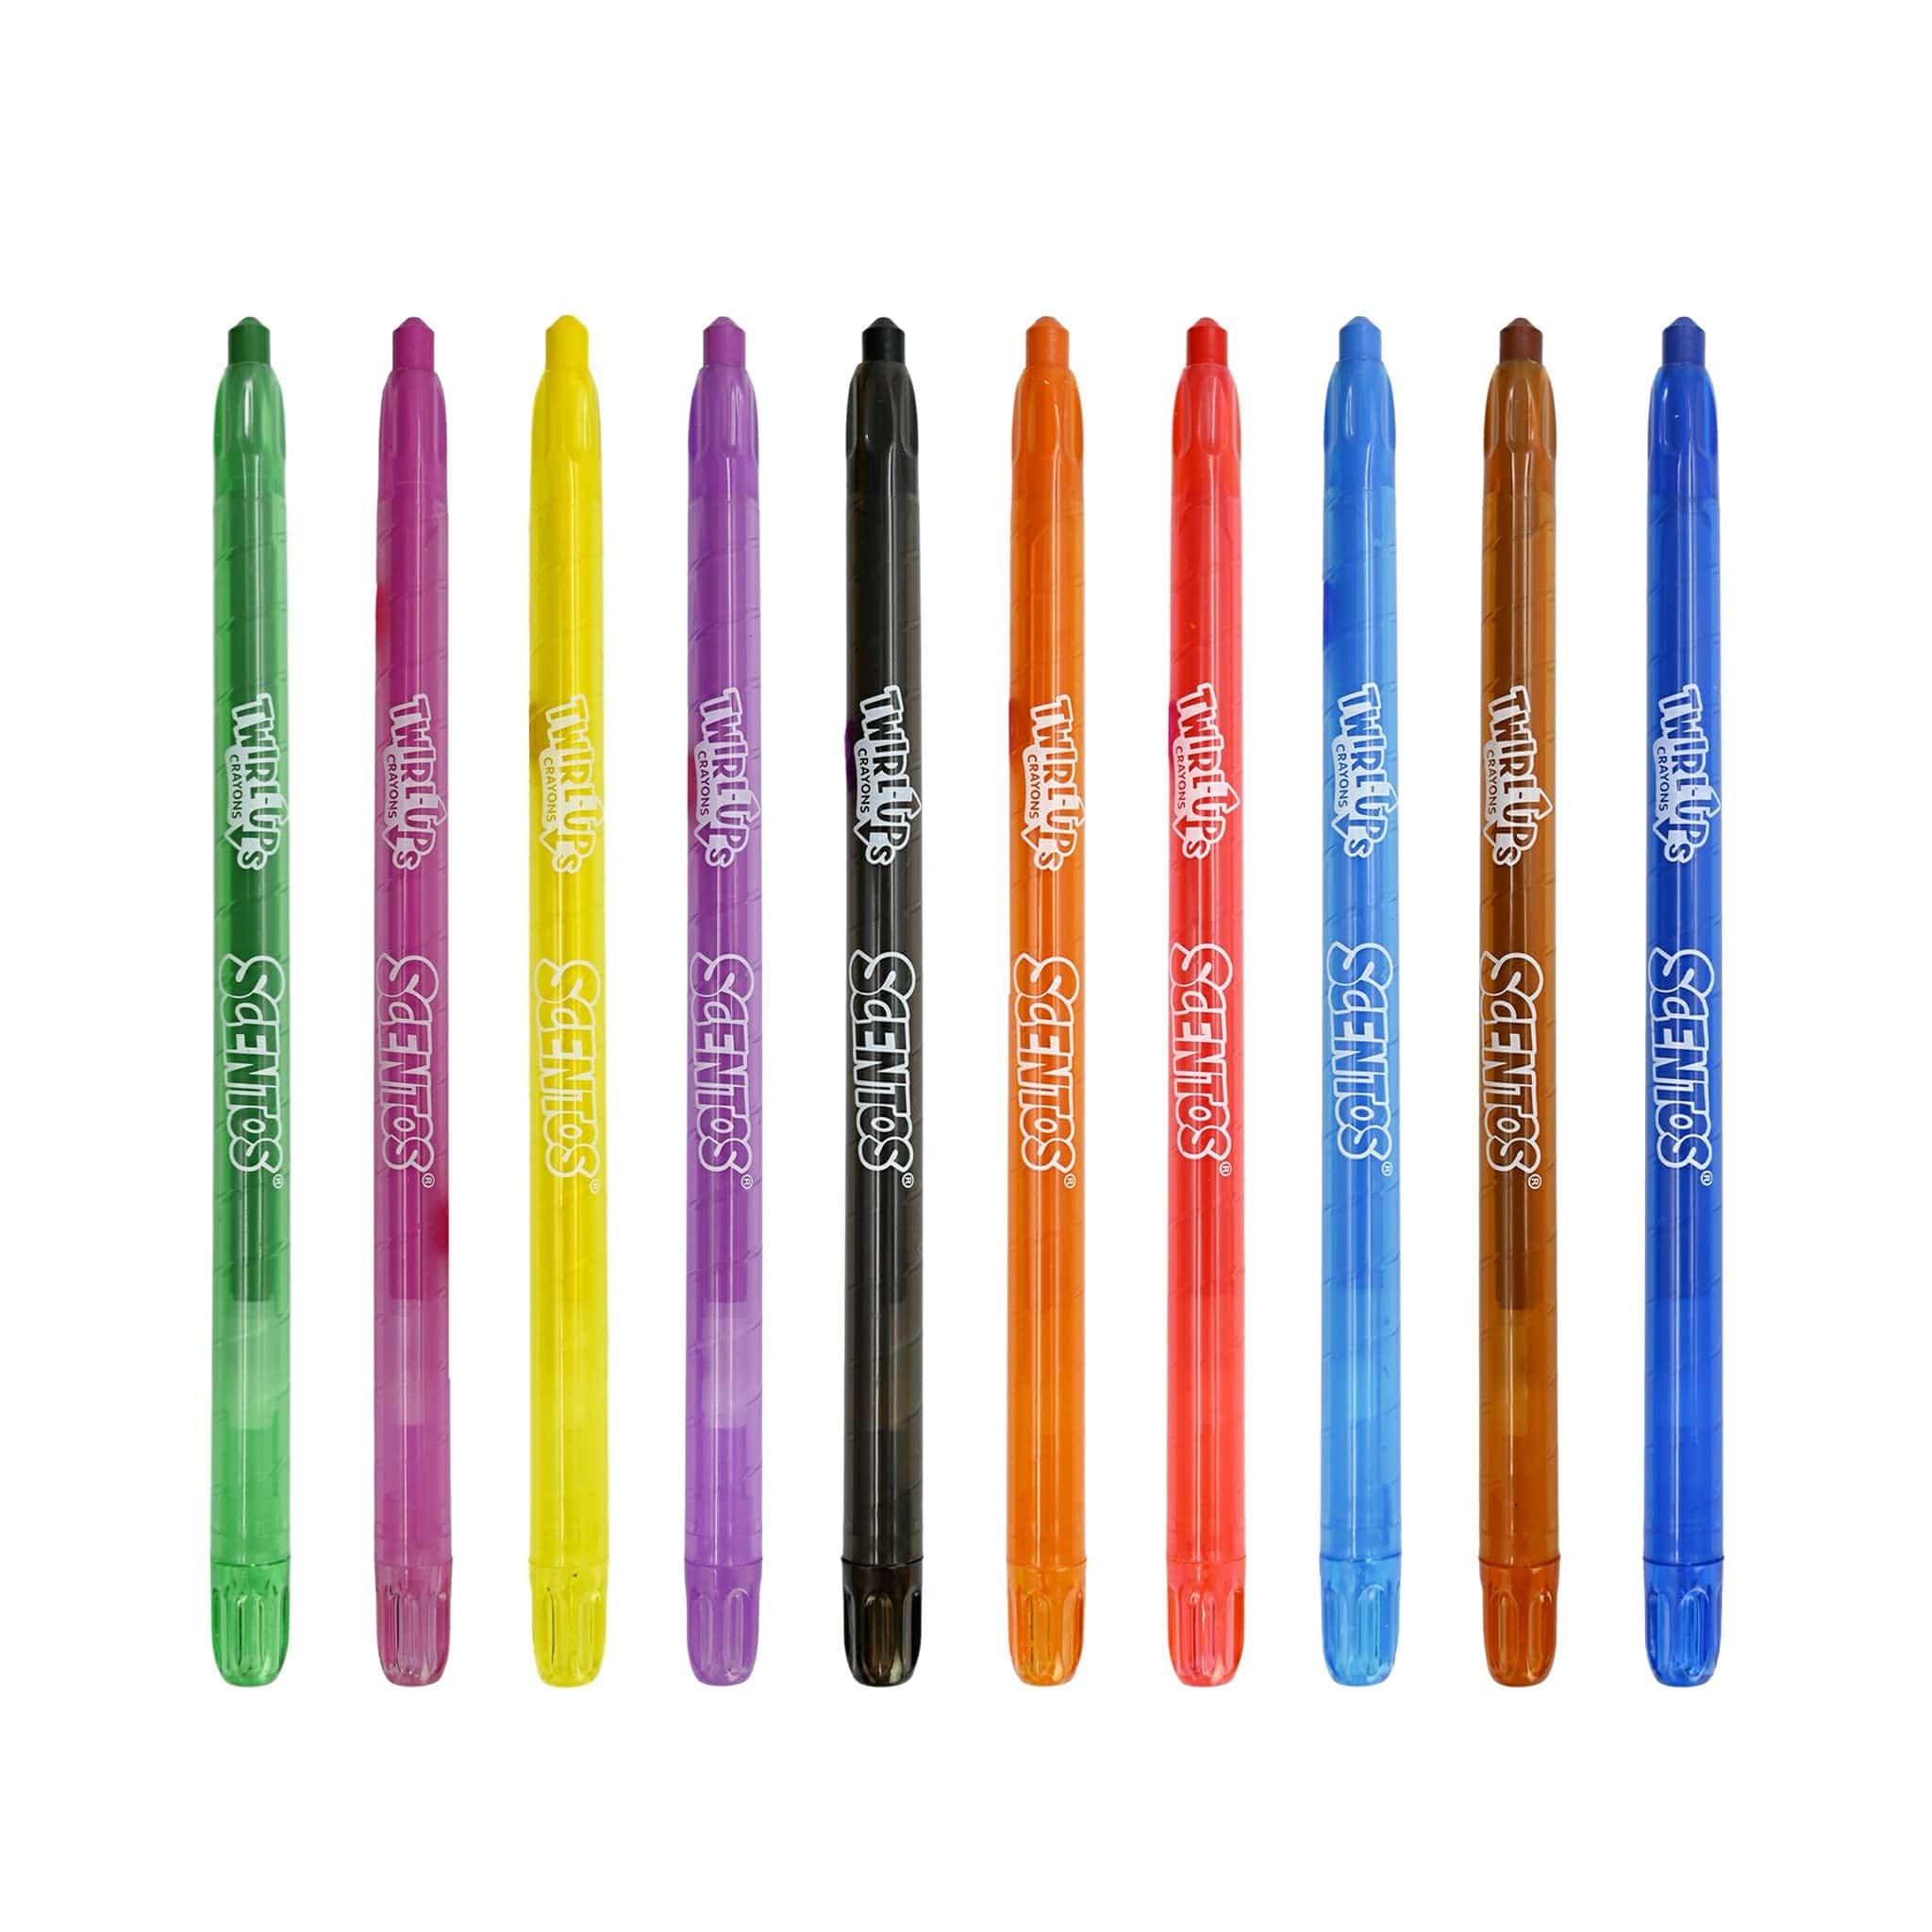 https://shopscentos.com/cdn/shop/files/shopscentos-crayon-scentos-scented-twirl-ups-crayons-10-pack-41546953523490.jpg?v=1698249795